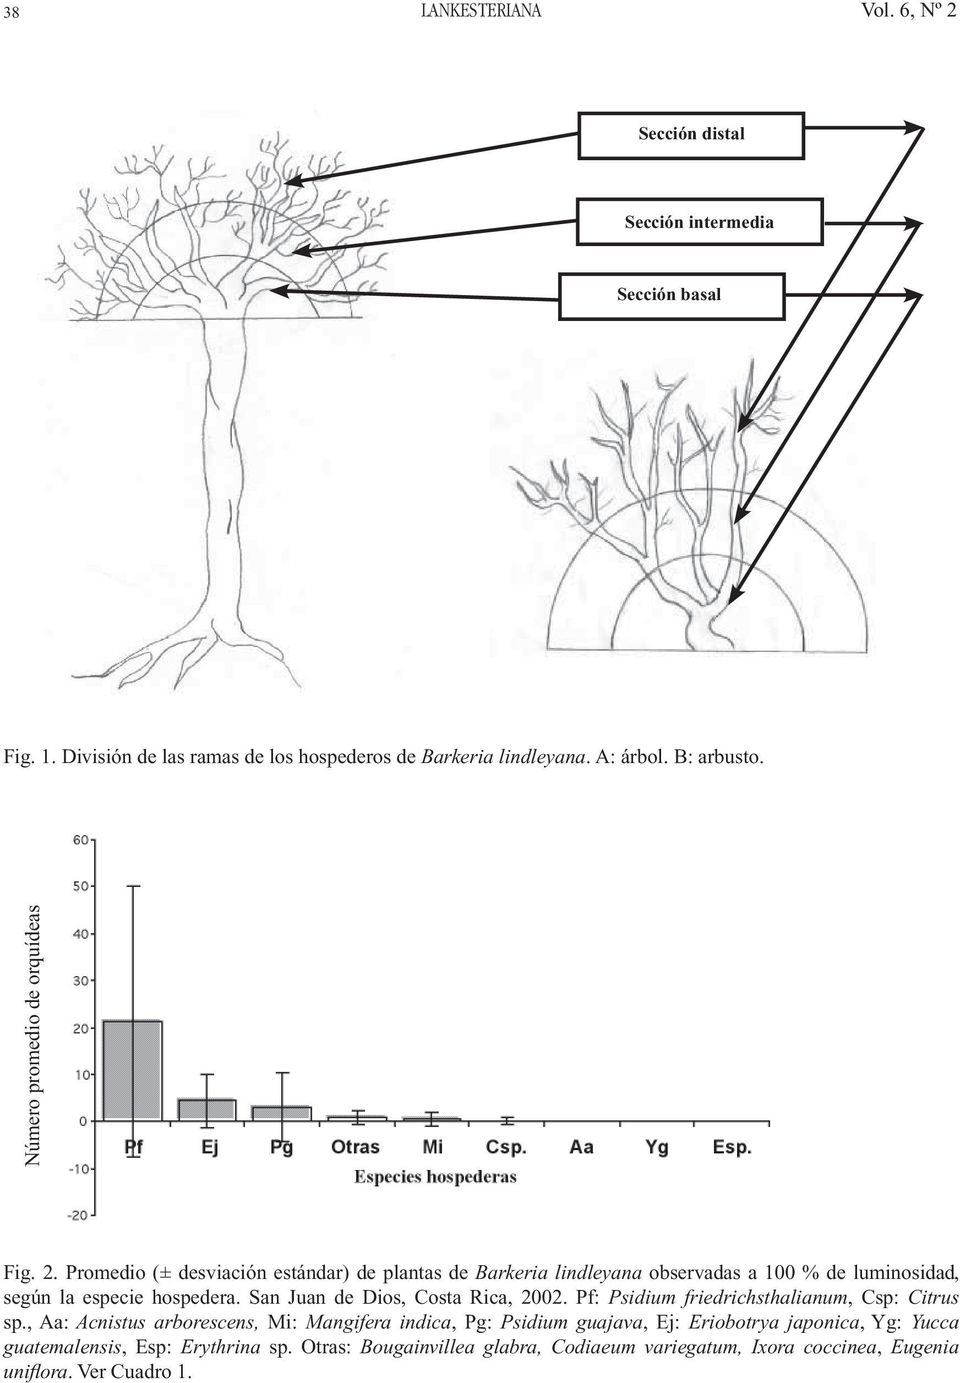 Promedio (± desviación estándar) de plantas de Barkeria lindleyana observadas a 100 % de luminosidad, según la especie hospedera.